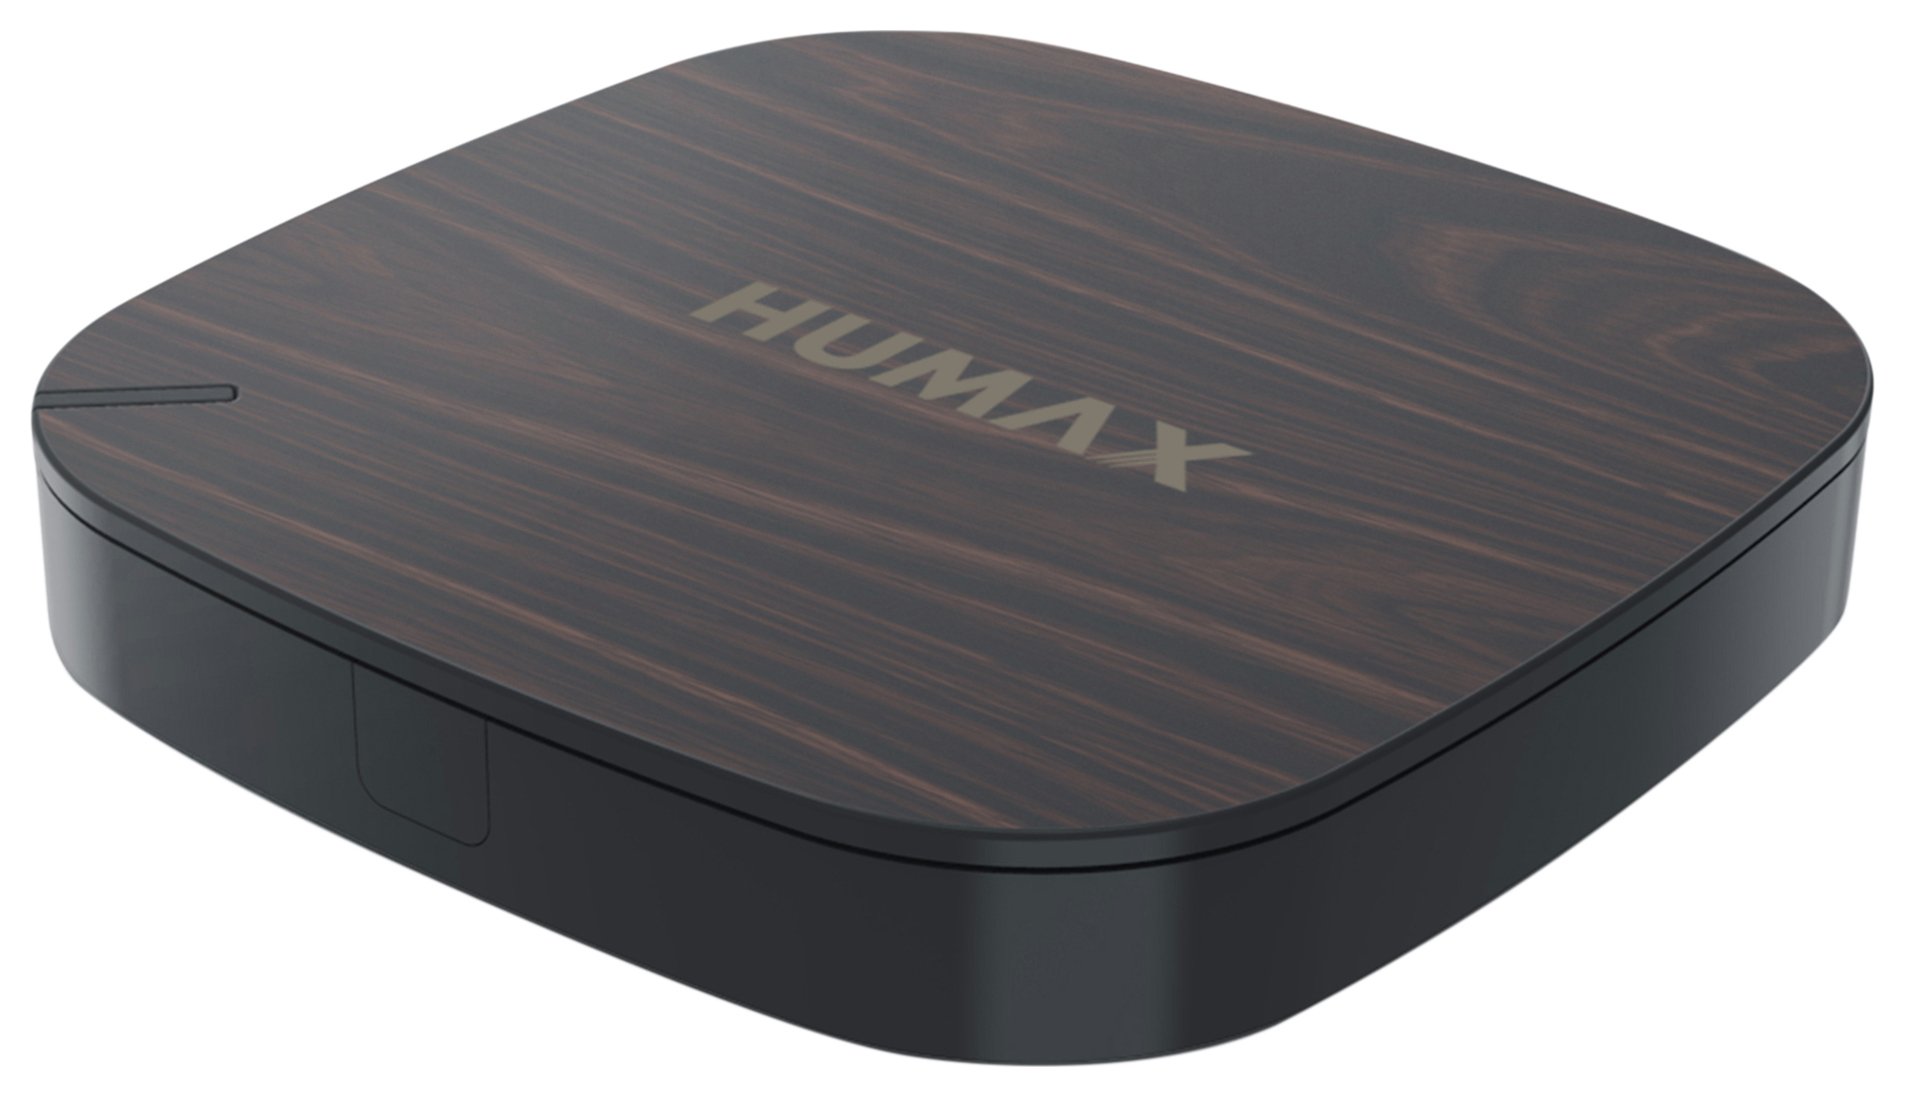 Humax H3 Espresso Smart TV Box